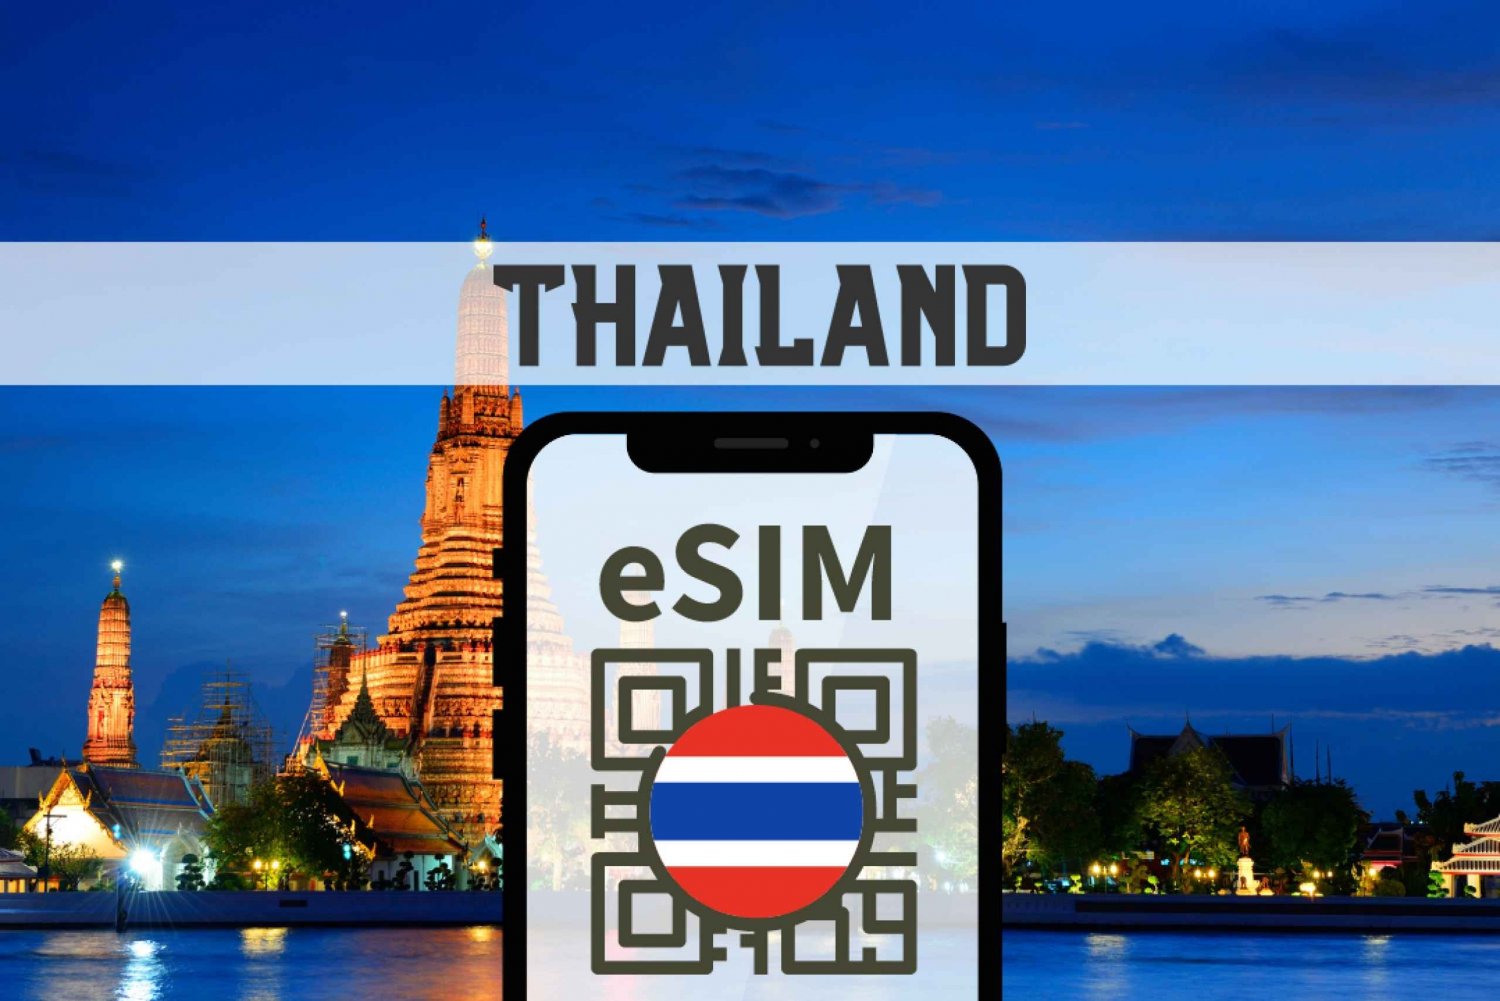 Tailândia eSIM com dados e voz 5G/4G ilimitados